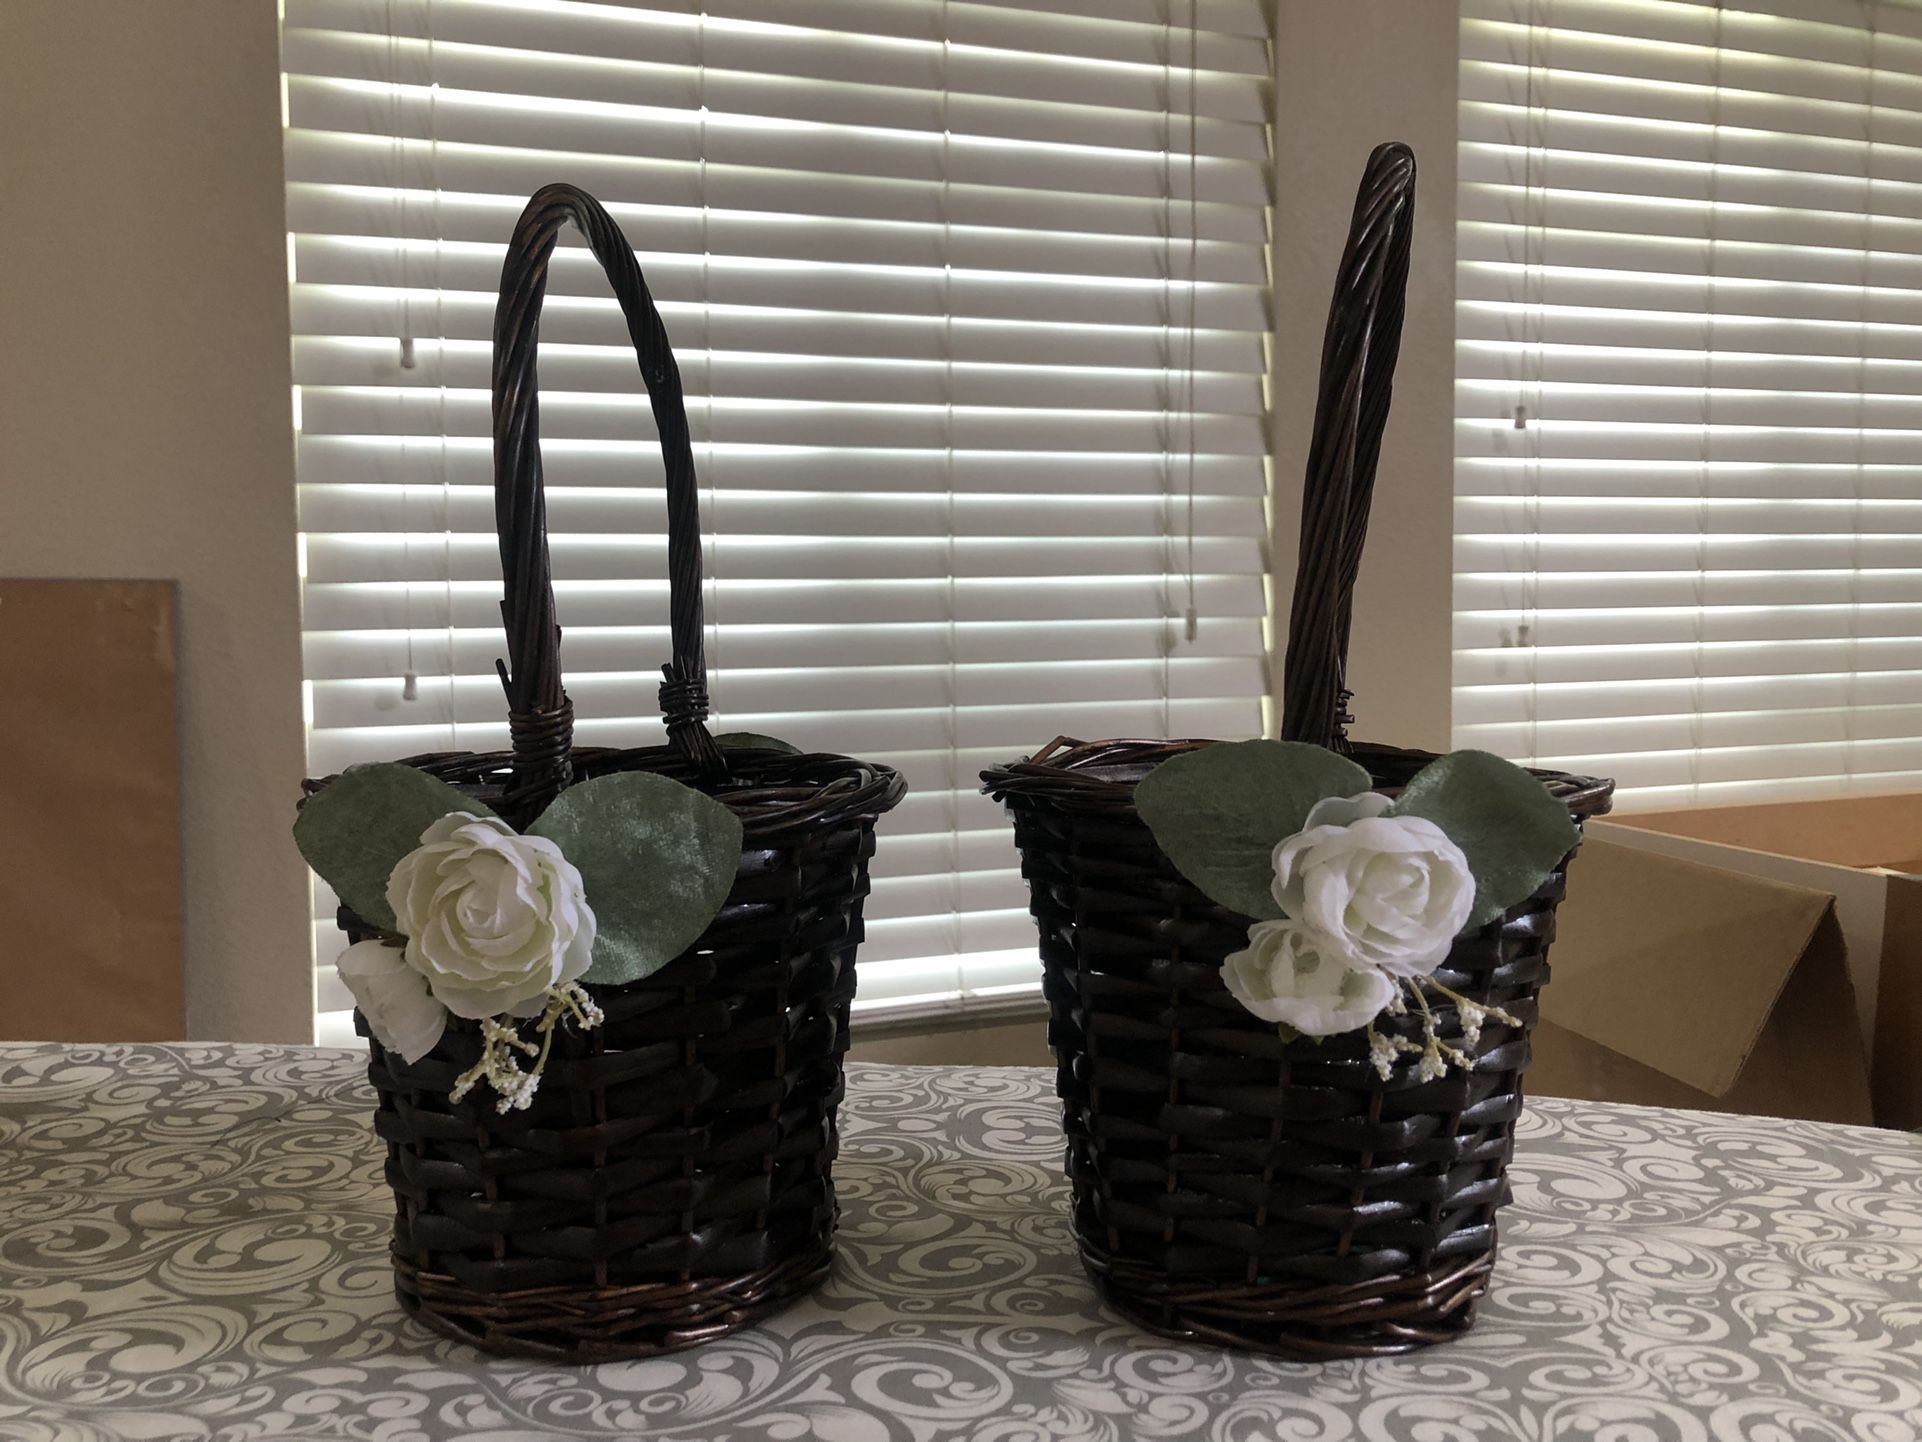 2 Flower Girl Baskets Sold Together 